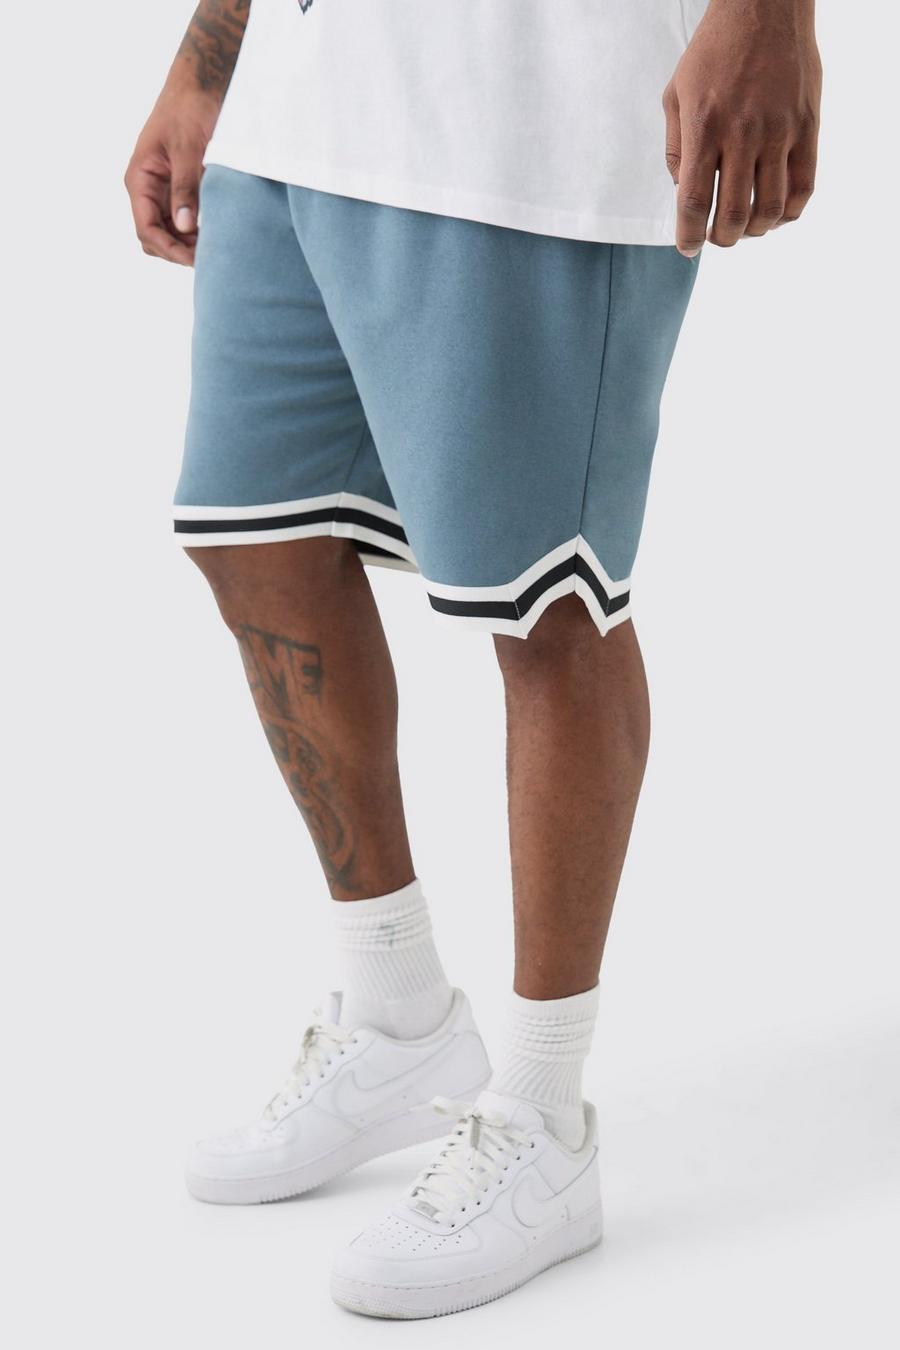 Pantaloncini da basket Plus Size medi comodi color ardesia, Slate